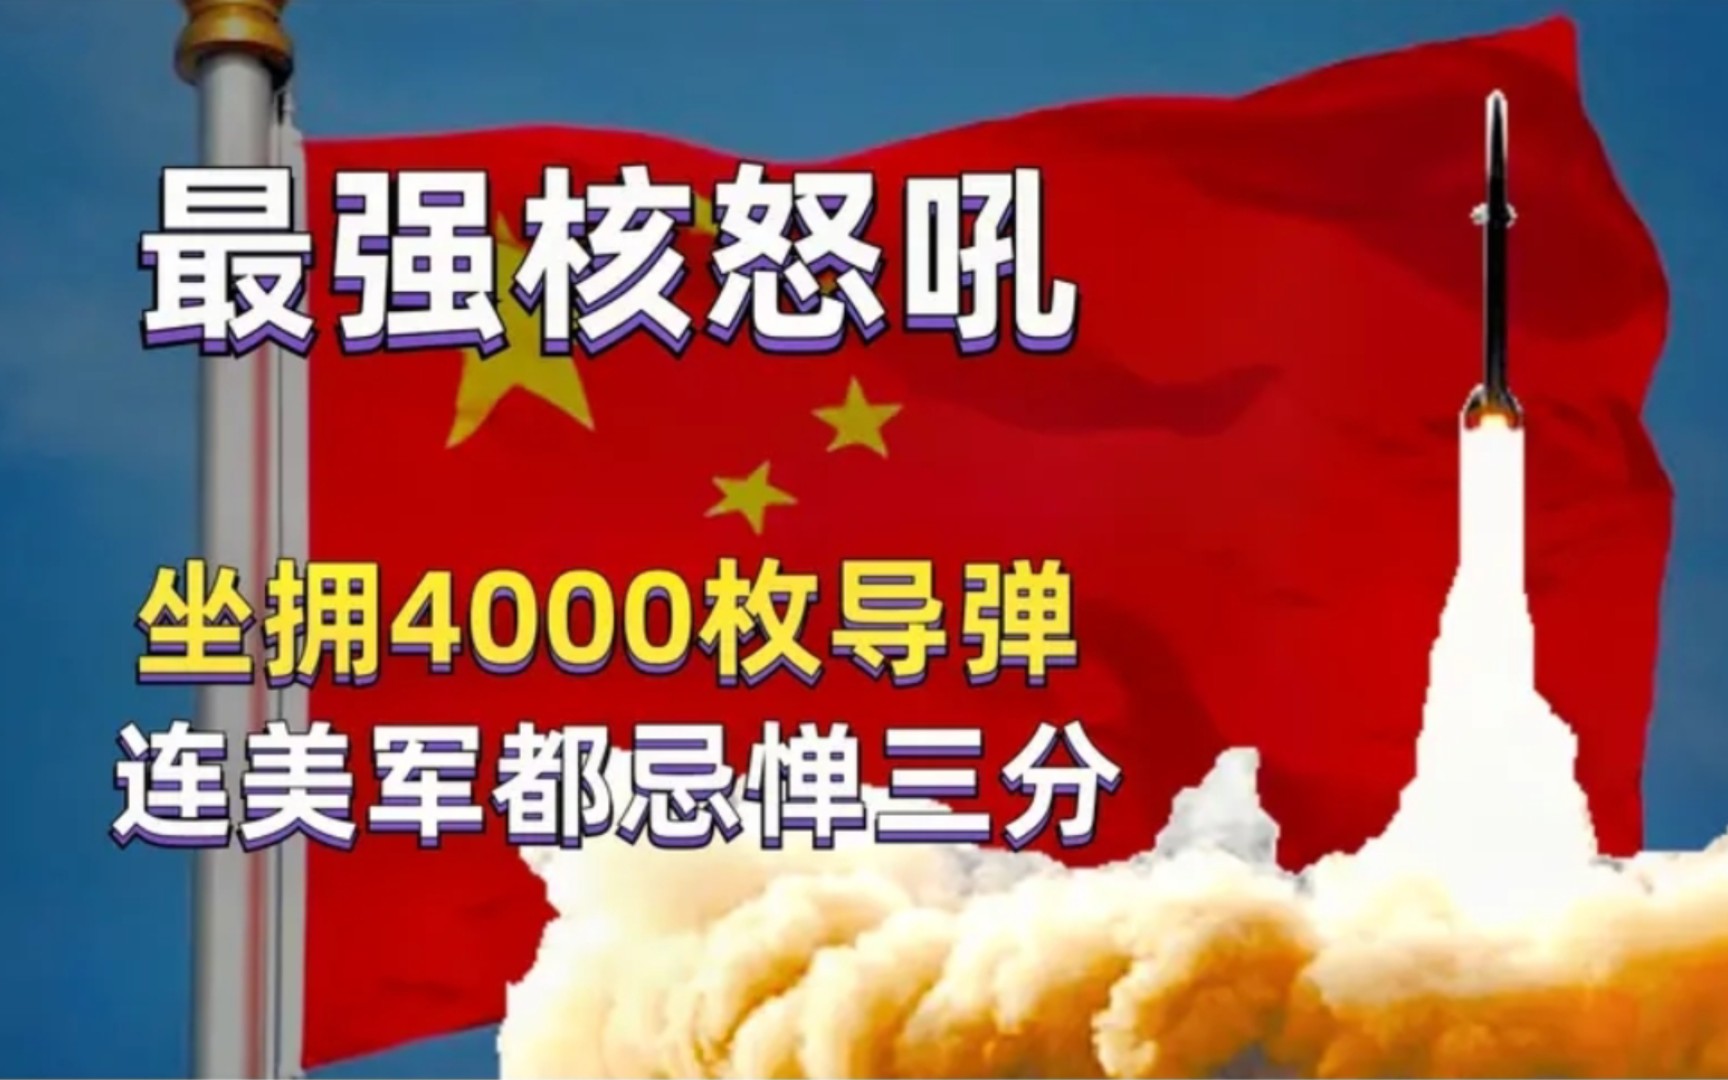 中国发出最强“核怒吼”！拥有真正的最强战斗力，不怕任何强敌！